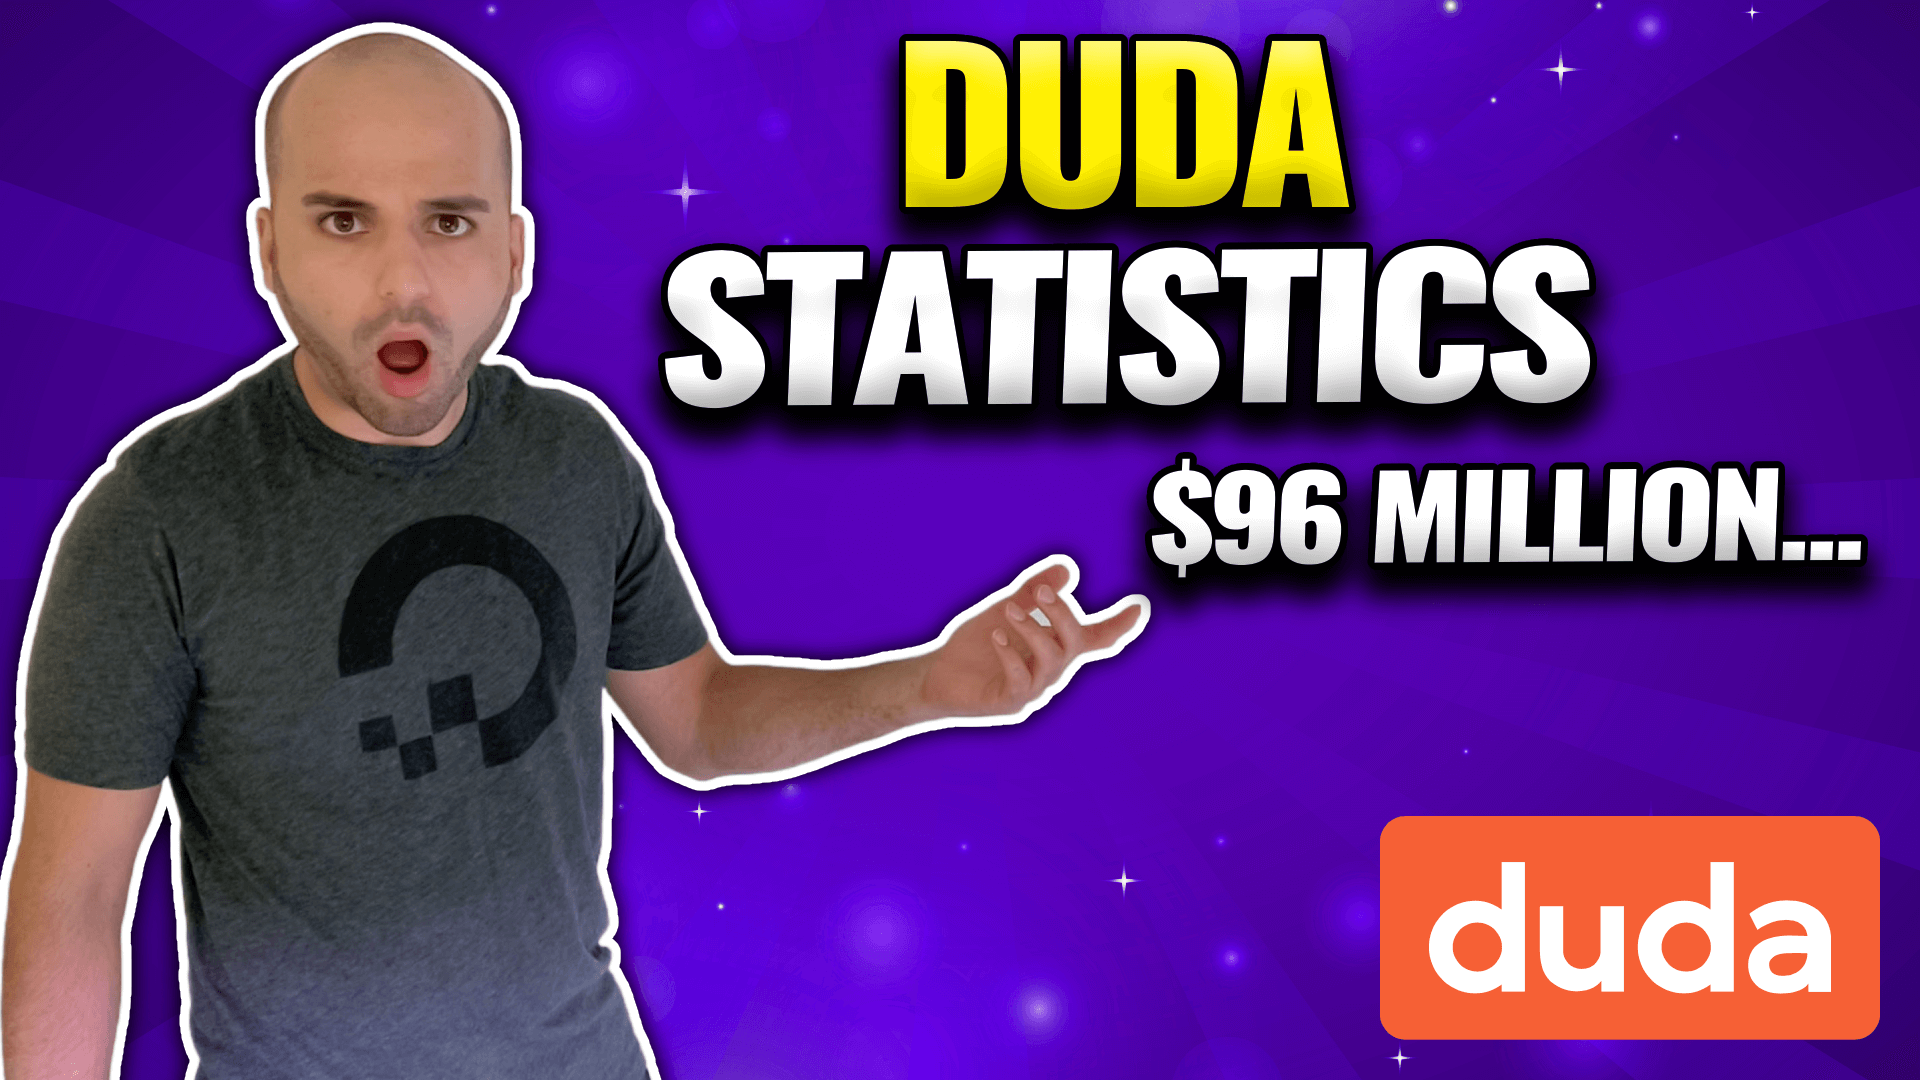 "Duda Statistics $96 million"